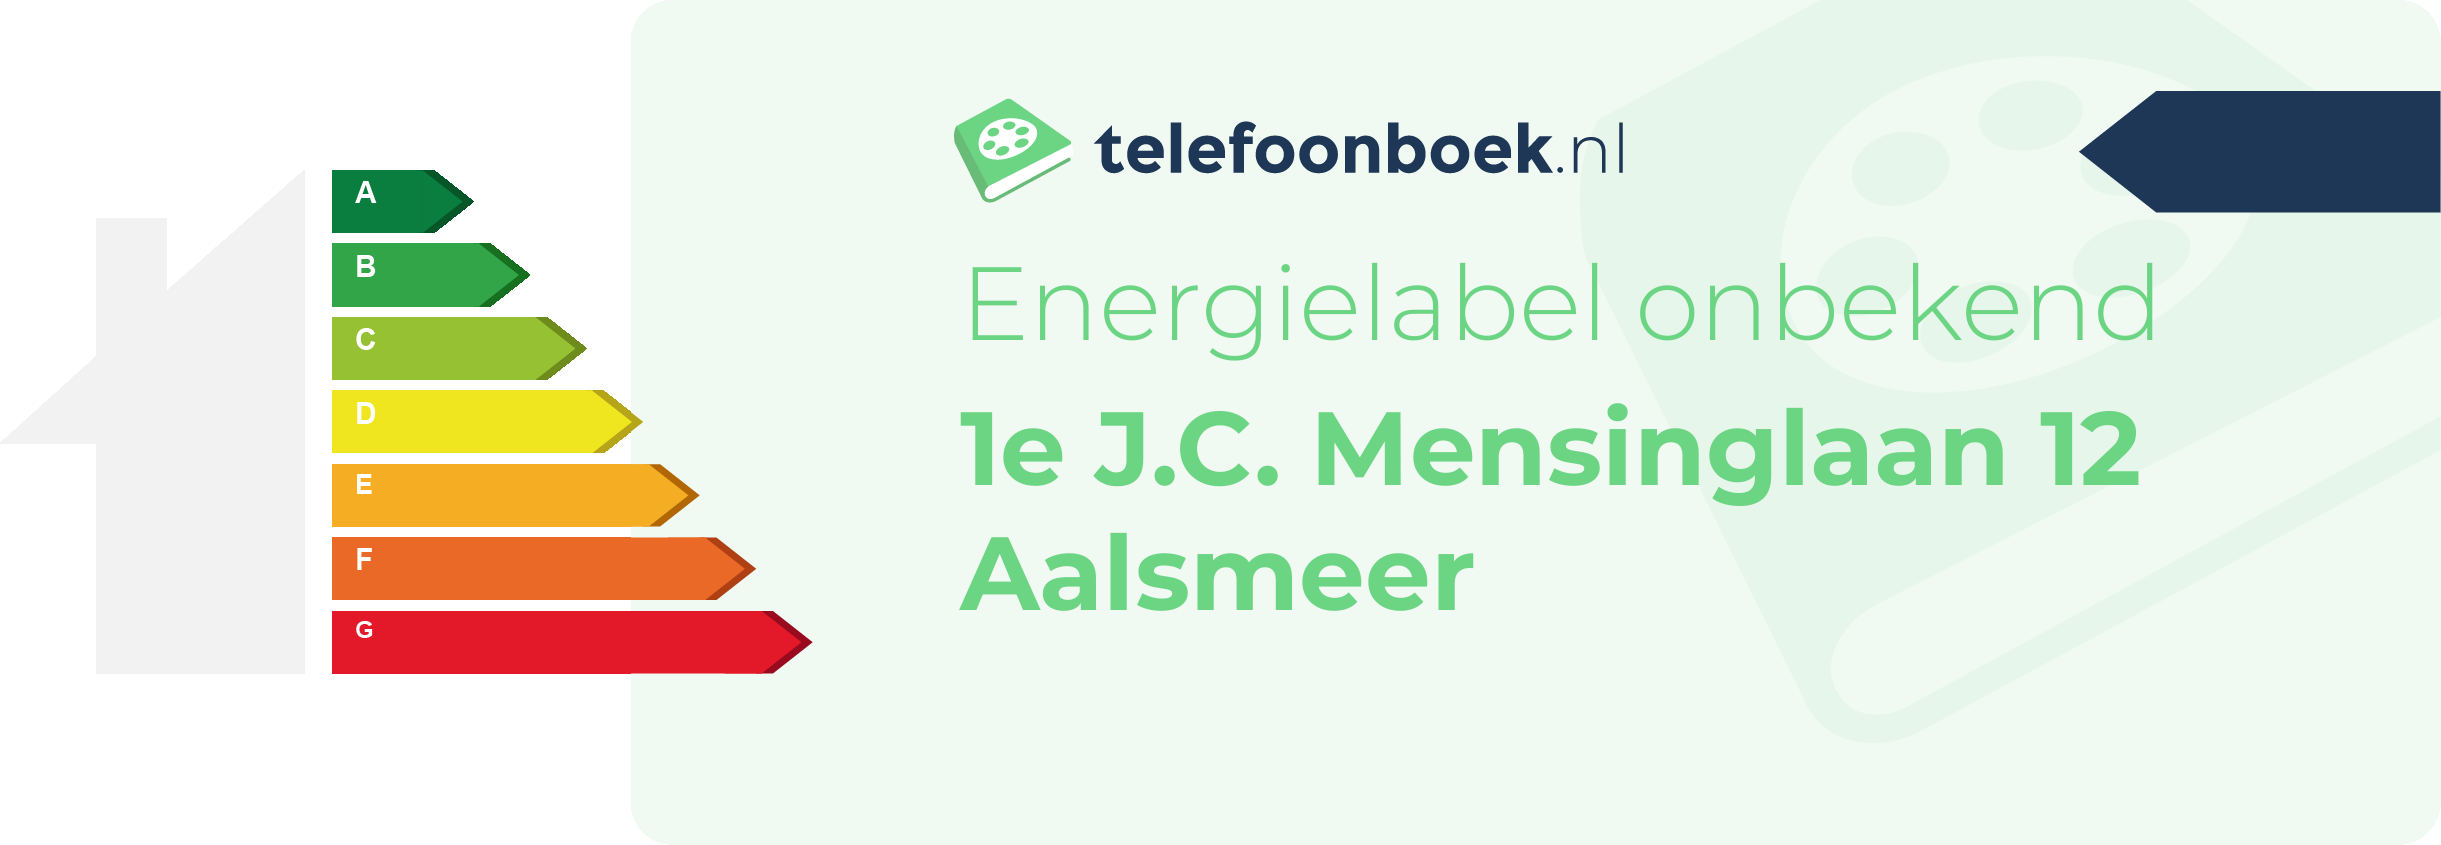 Energielabel 1e J.C. Mensinglaan 12 Aalsmeer